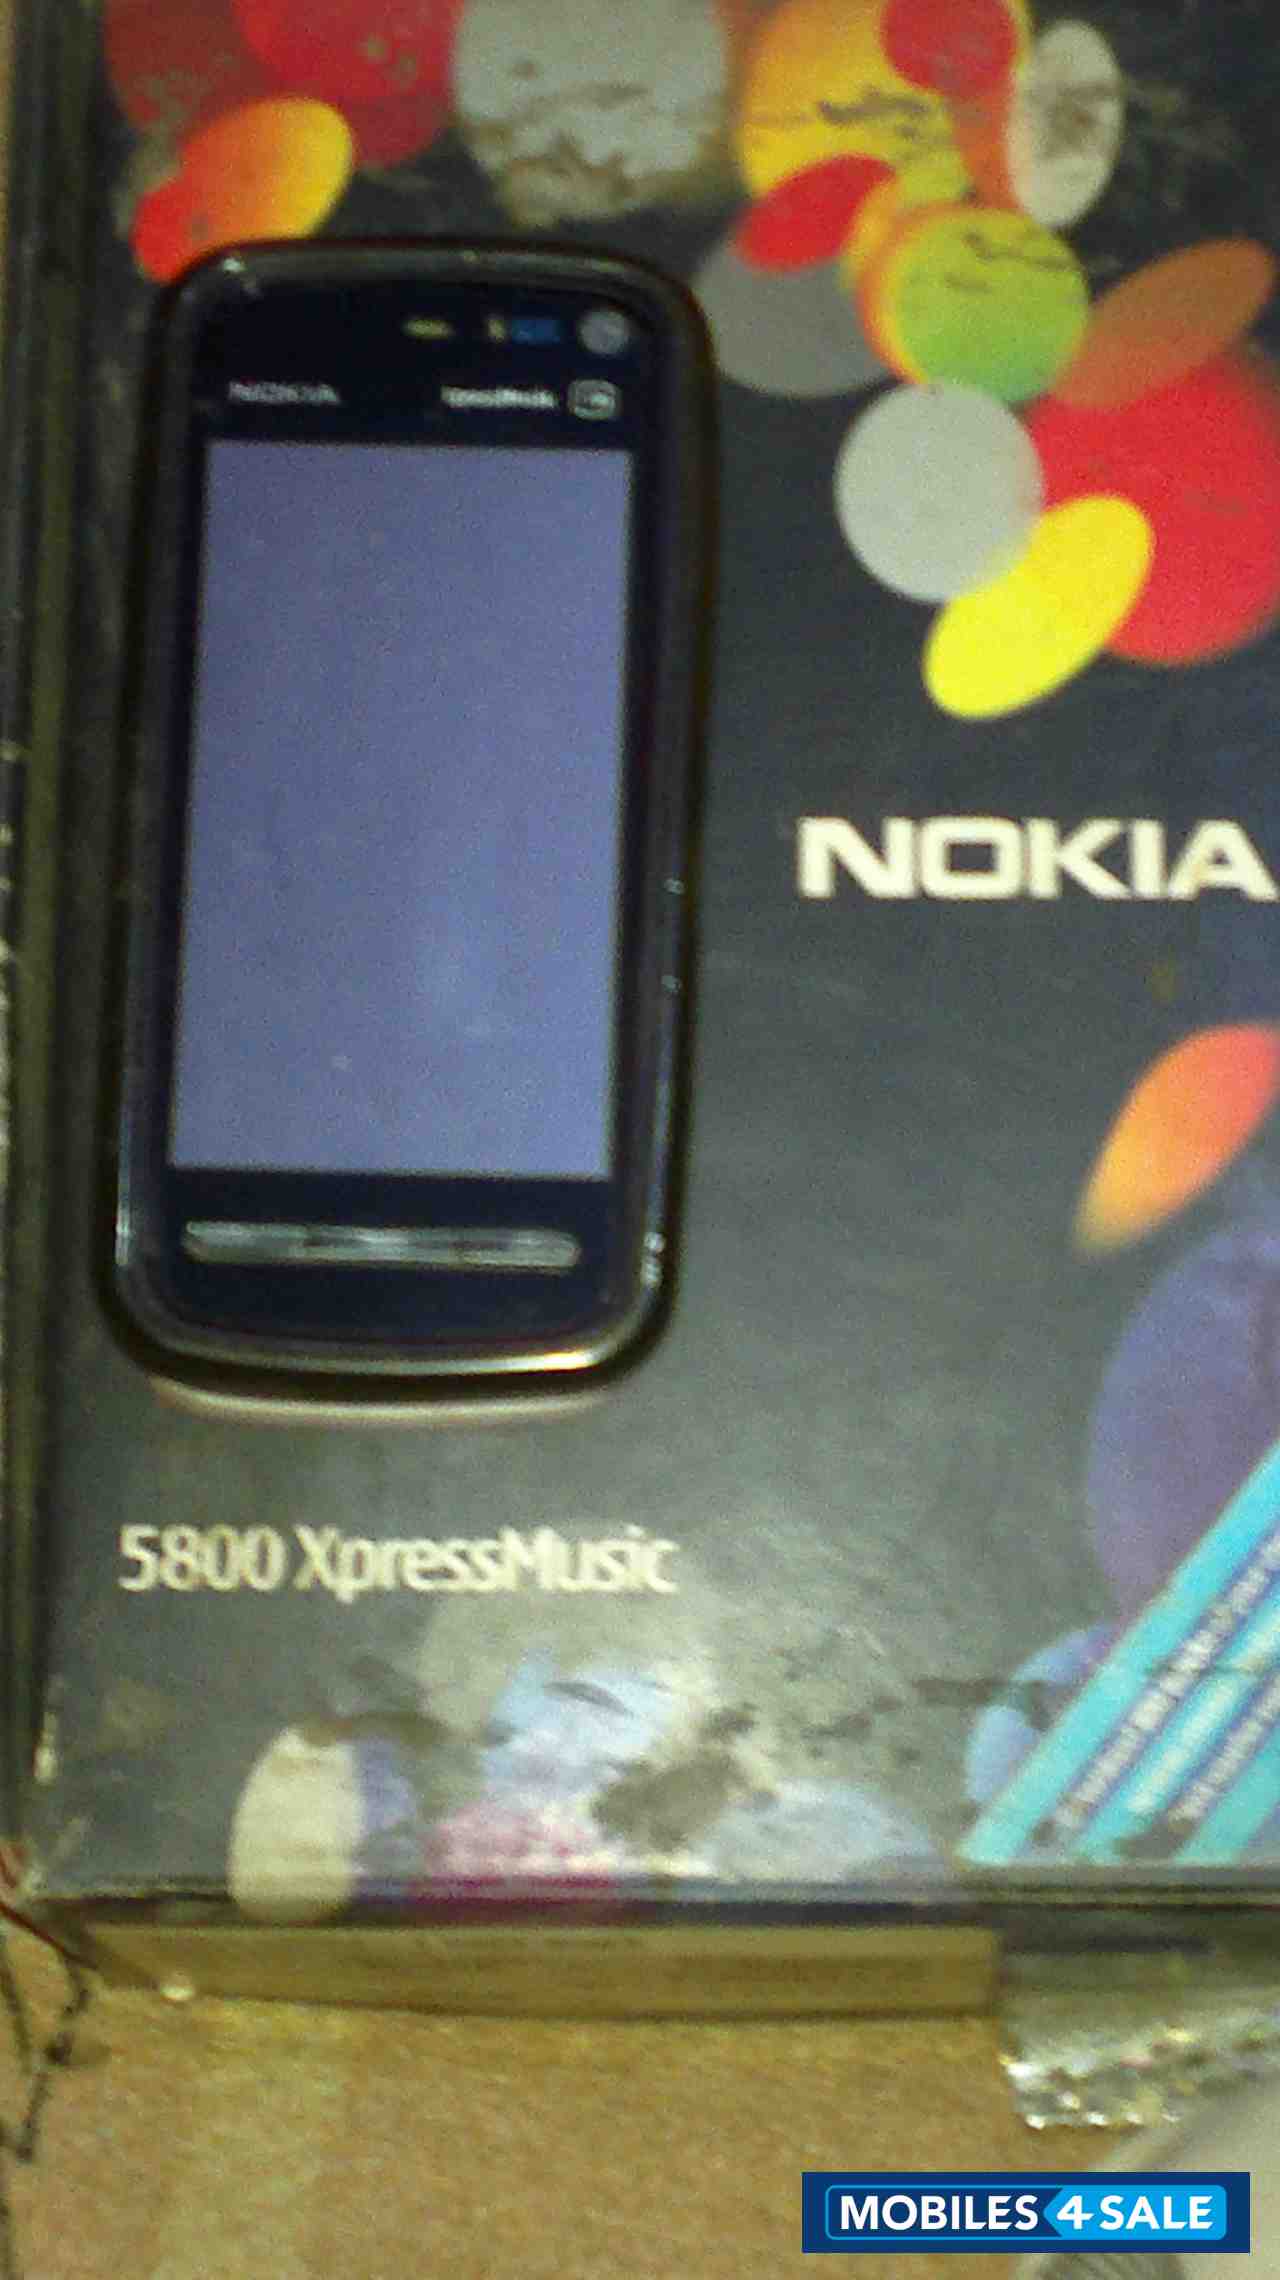 Black Nokia XpressMusic 5800